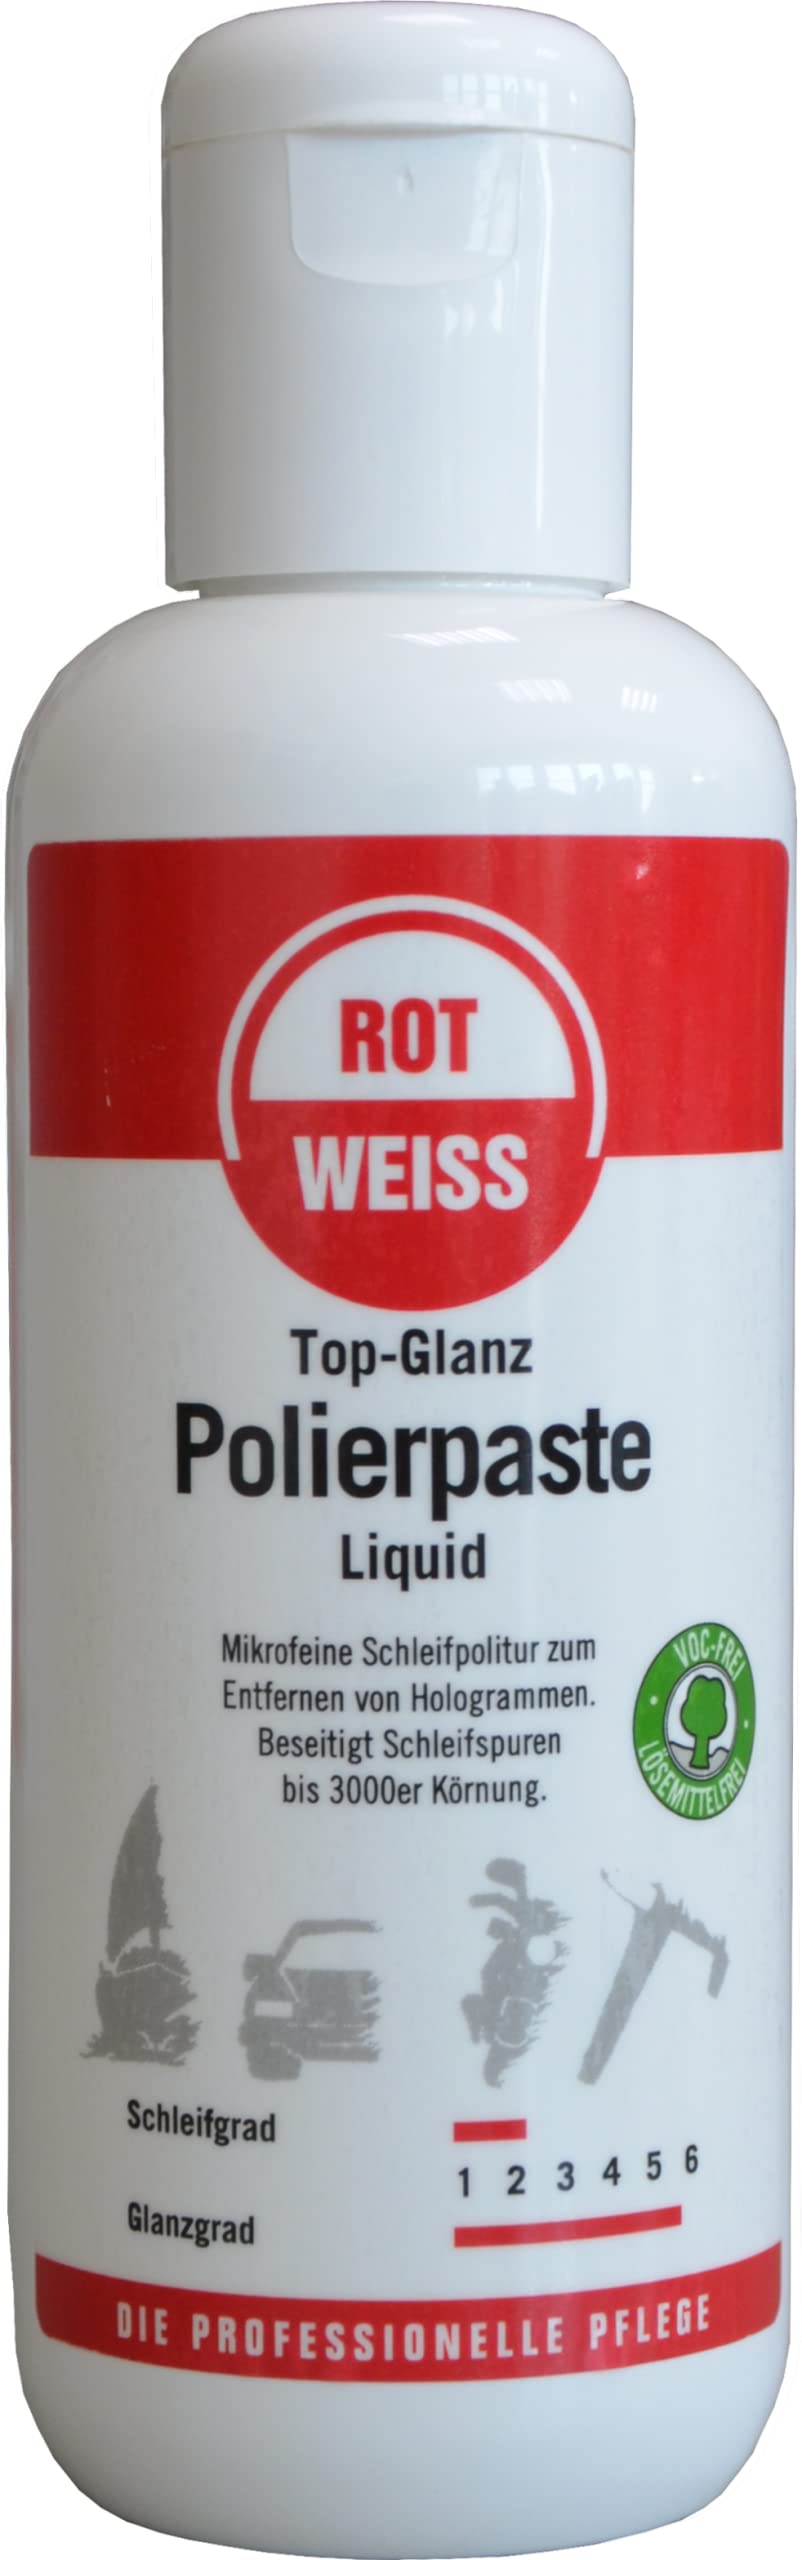 Rotweiss 1552 Top-Glanz Polierpaste Liquid 250 ml von ROT WEISS